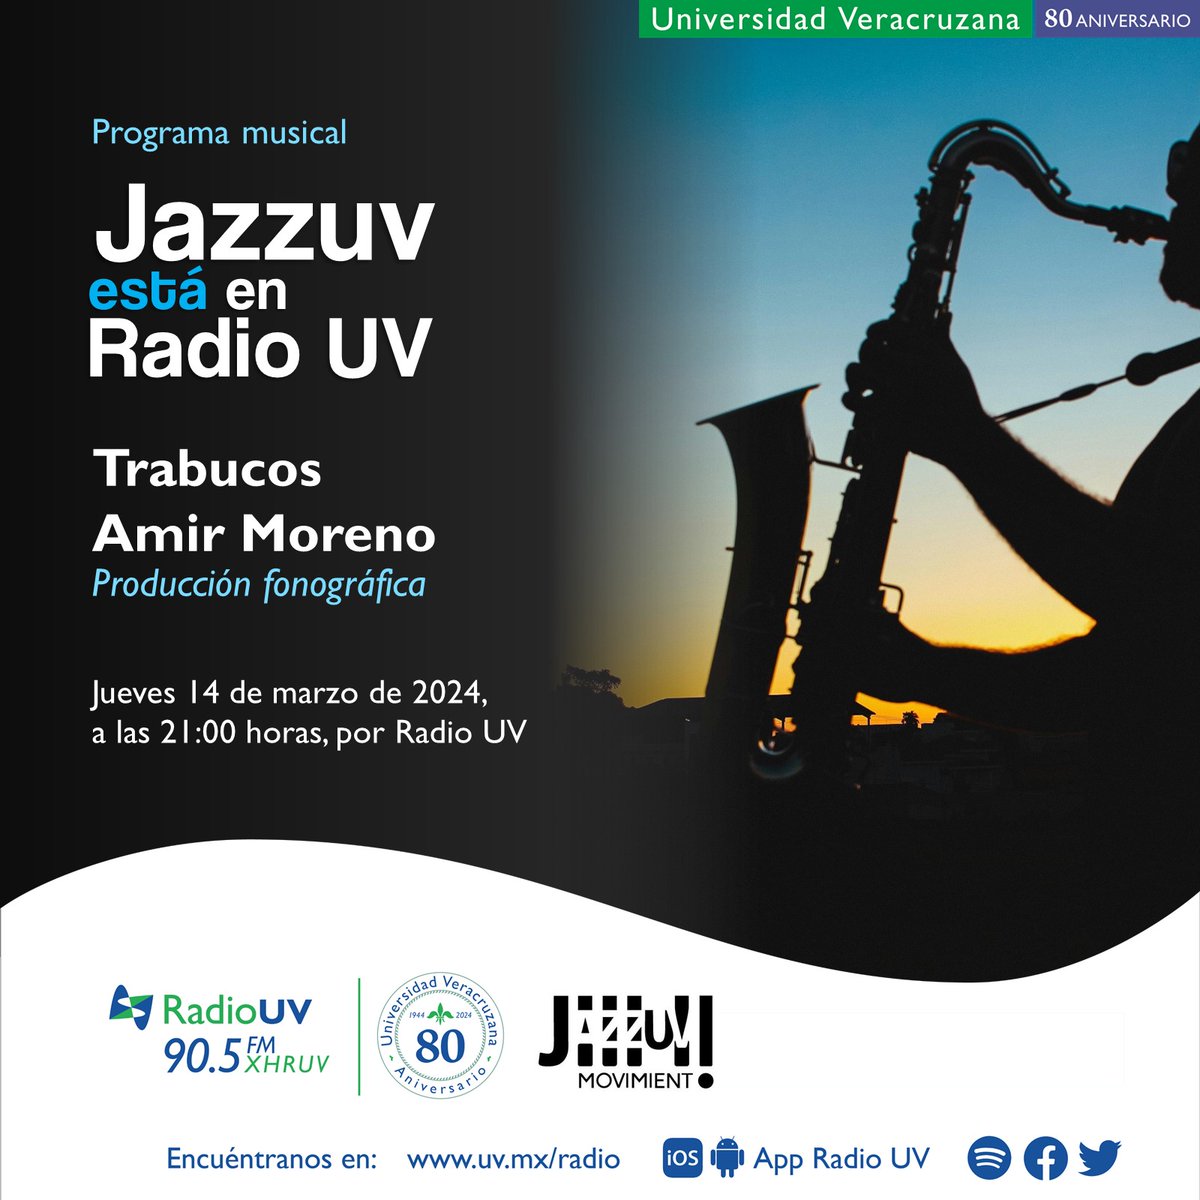 ¡Jazzuv está en Radio UV! 🎷🎼 A partir de hoy, disfruta la producción fonográfica de creadoras y creadores del @centrojazzuv. Comenzamos disfrutando la propuesta musical de “Trabucos”, seguido de “Amir Moreno'. 👉🏻Estreno: 21:00 horas, a través del 90.5 FM